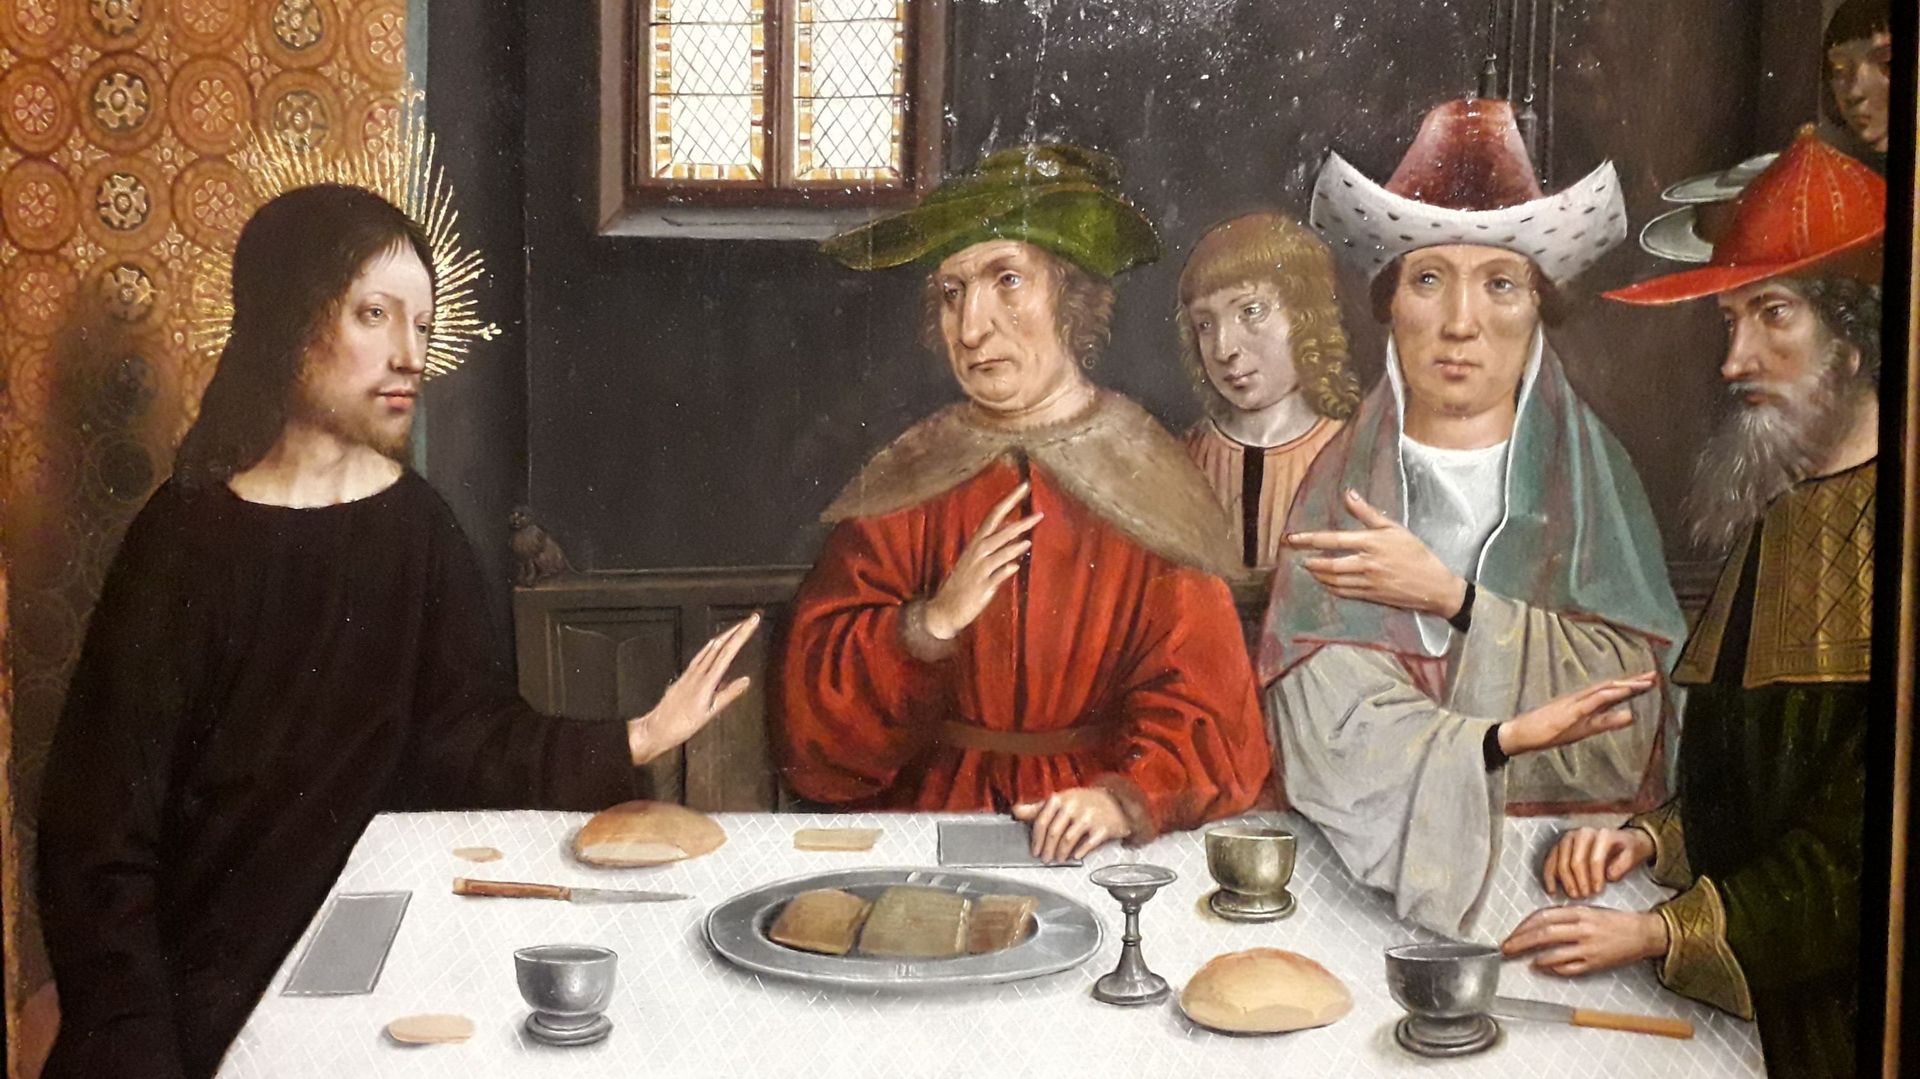 Le repas chez Simon, vers 1500